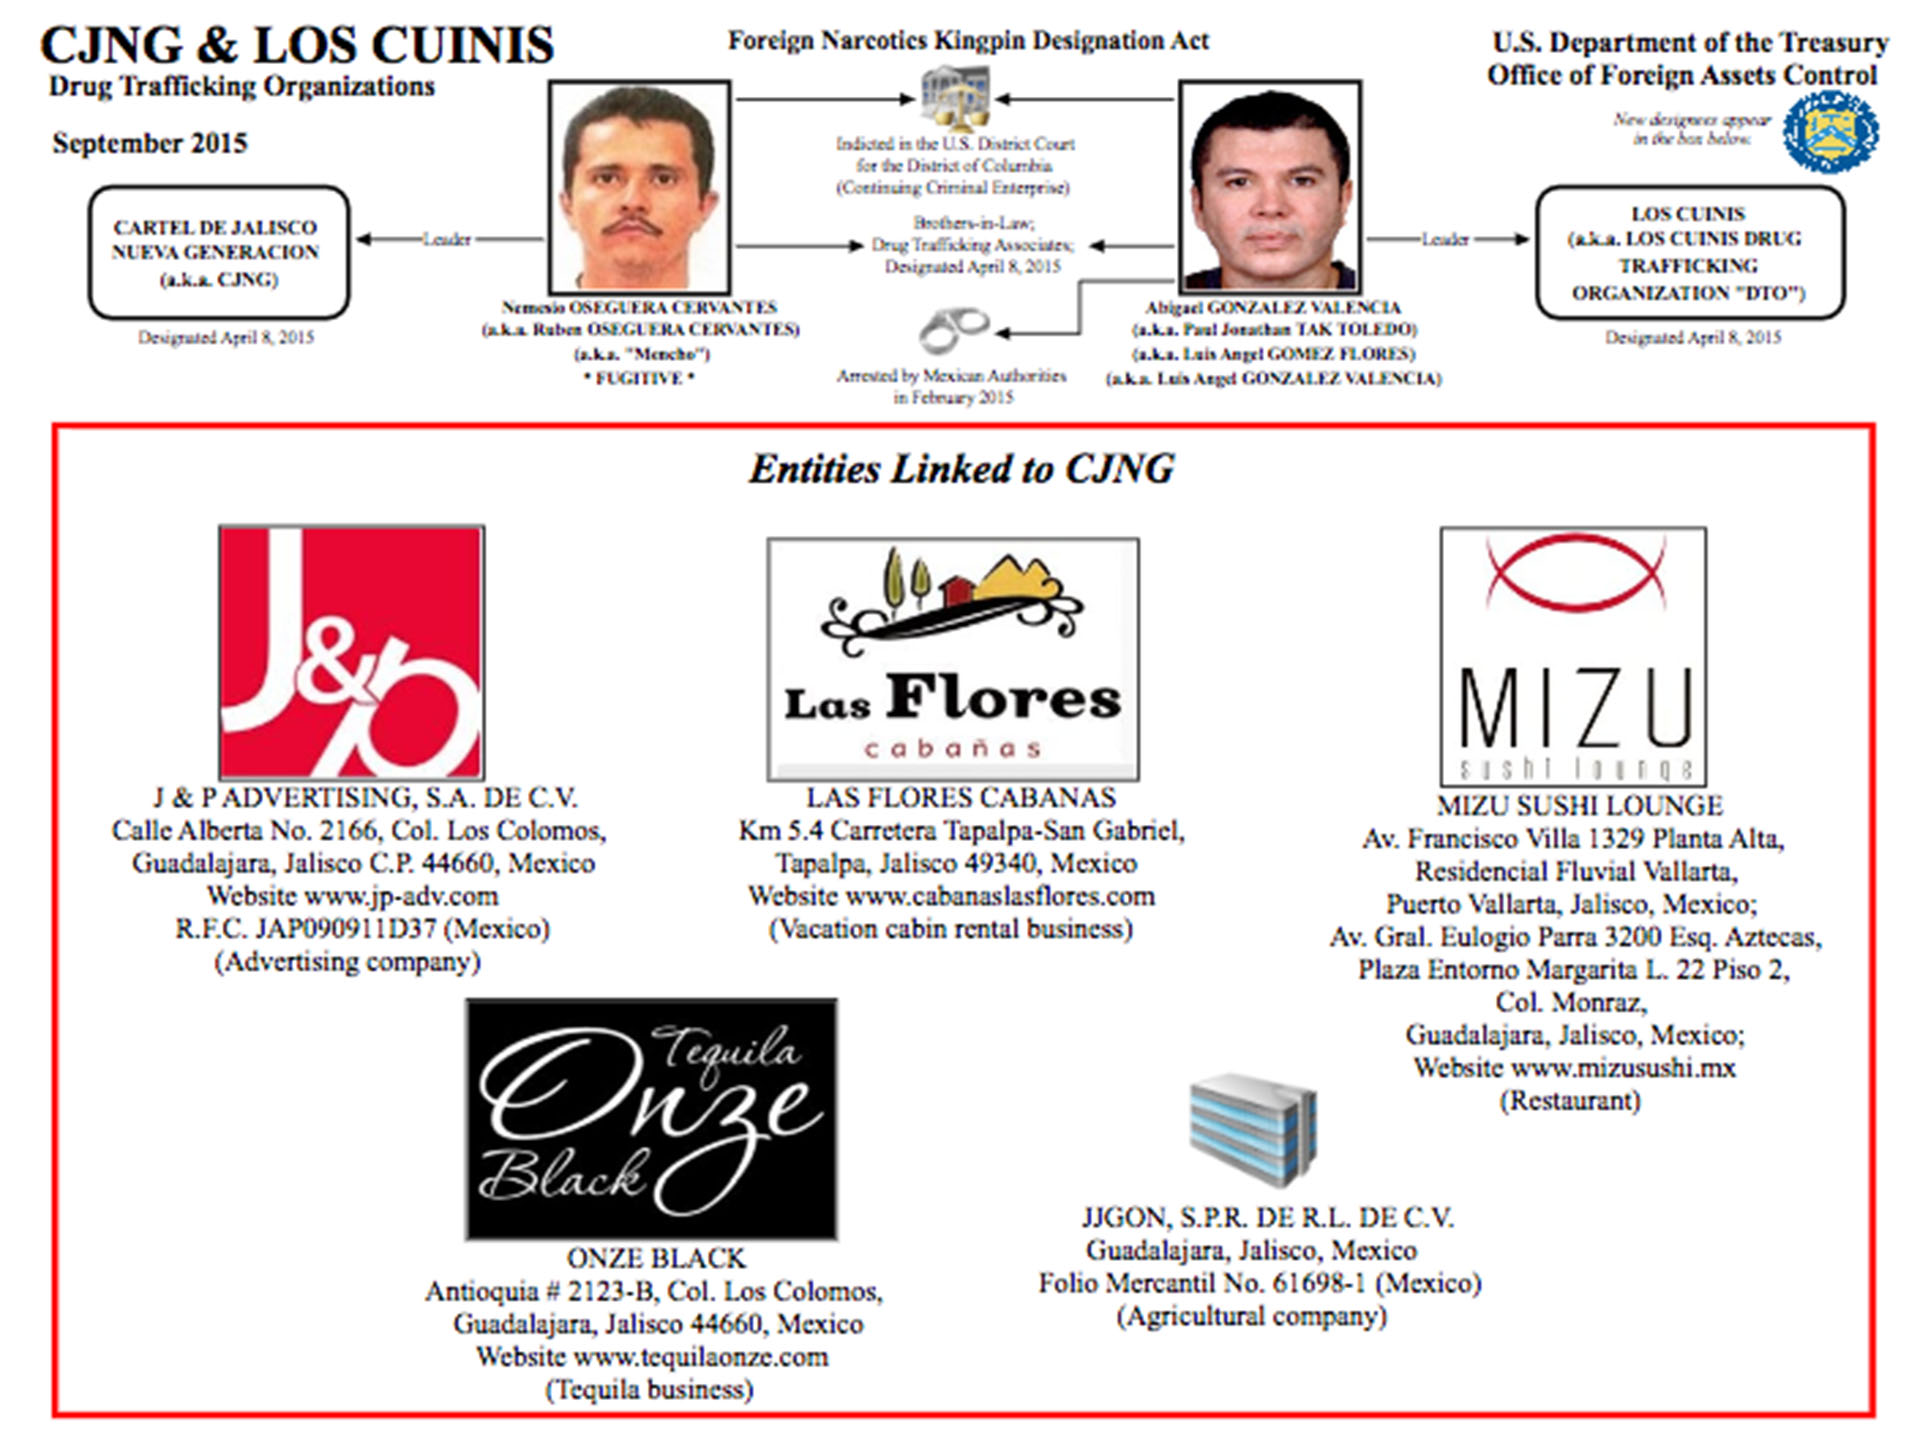 Dos grupos criminales expertos en el lavado de dinero son el Cártel Jalisco Nueva Generación y “Los Cuinis”, sus socios.